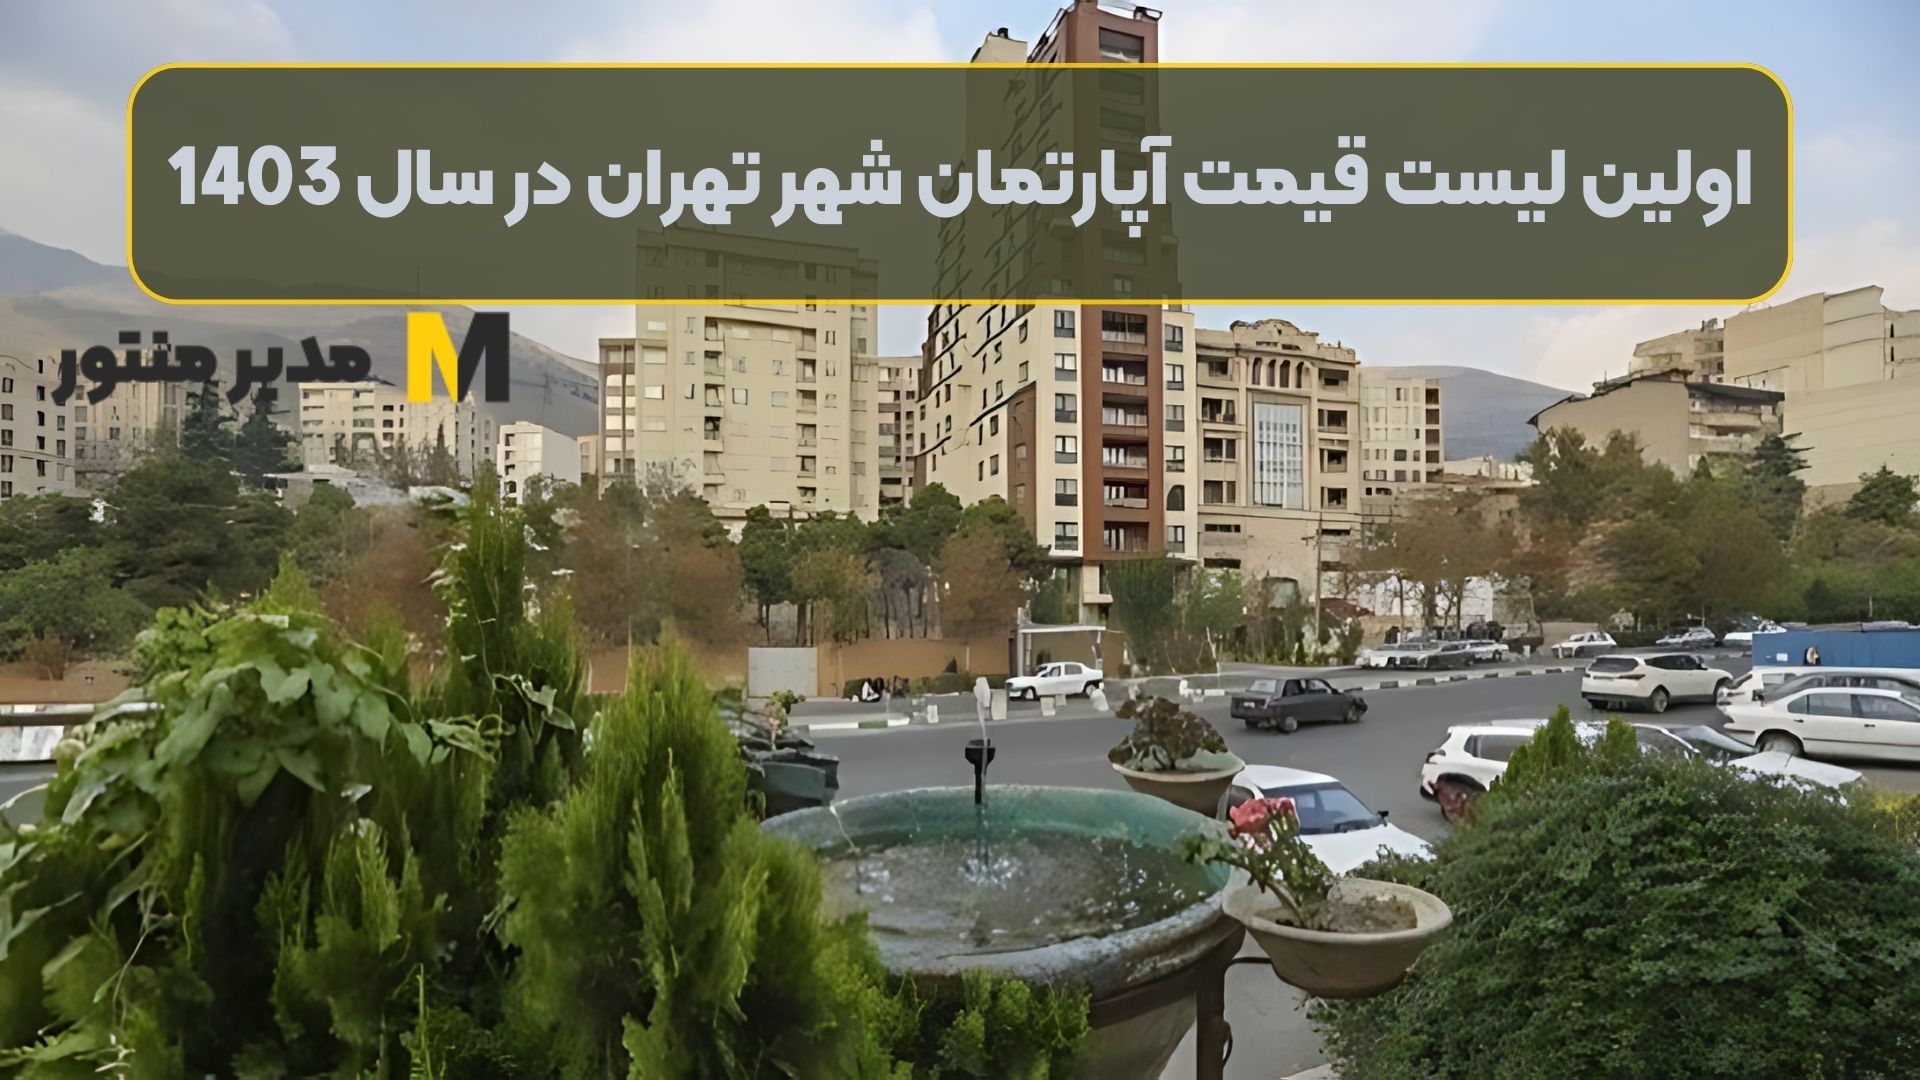 اولین لیست قیمت آپارتمان شهر تهران در سال 1403